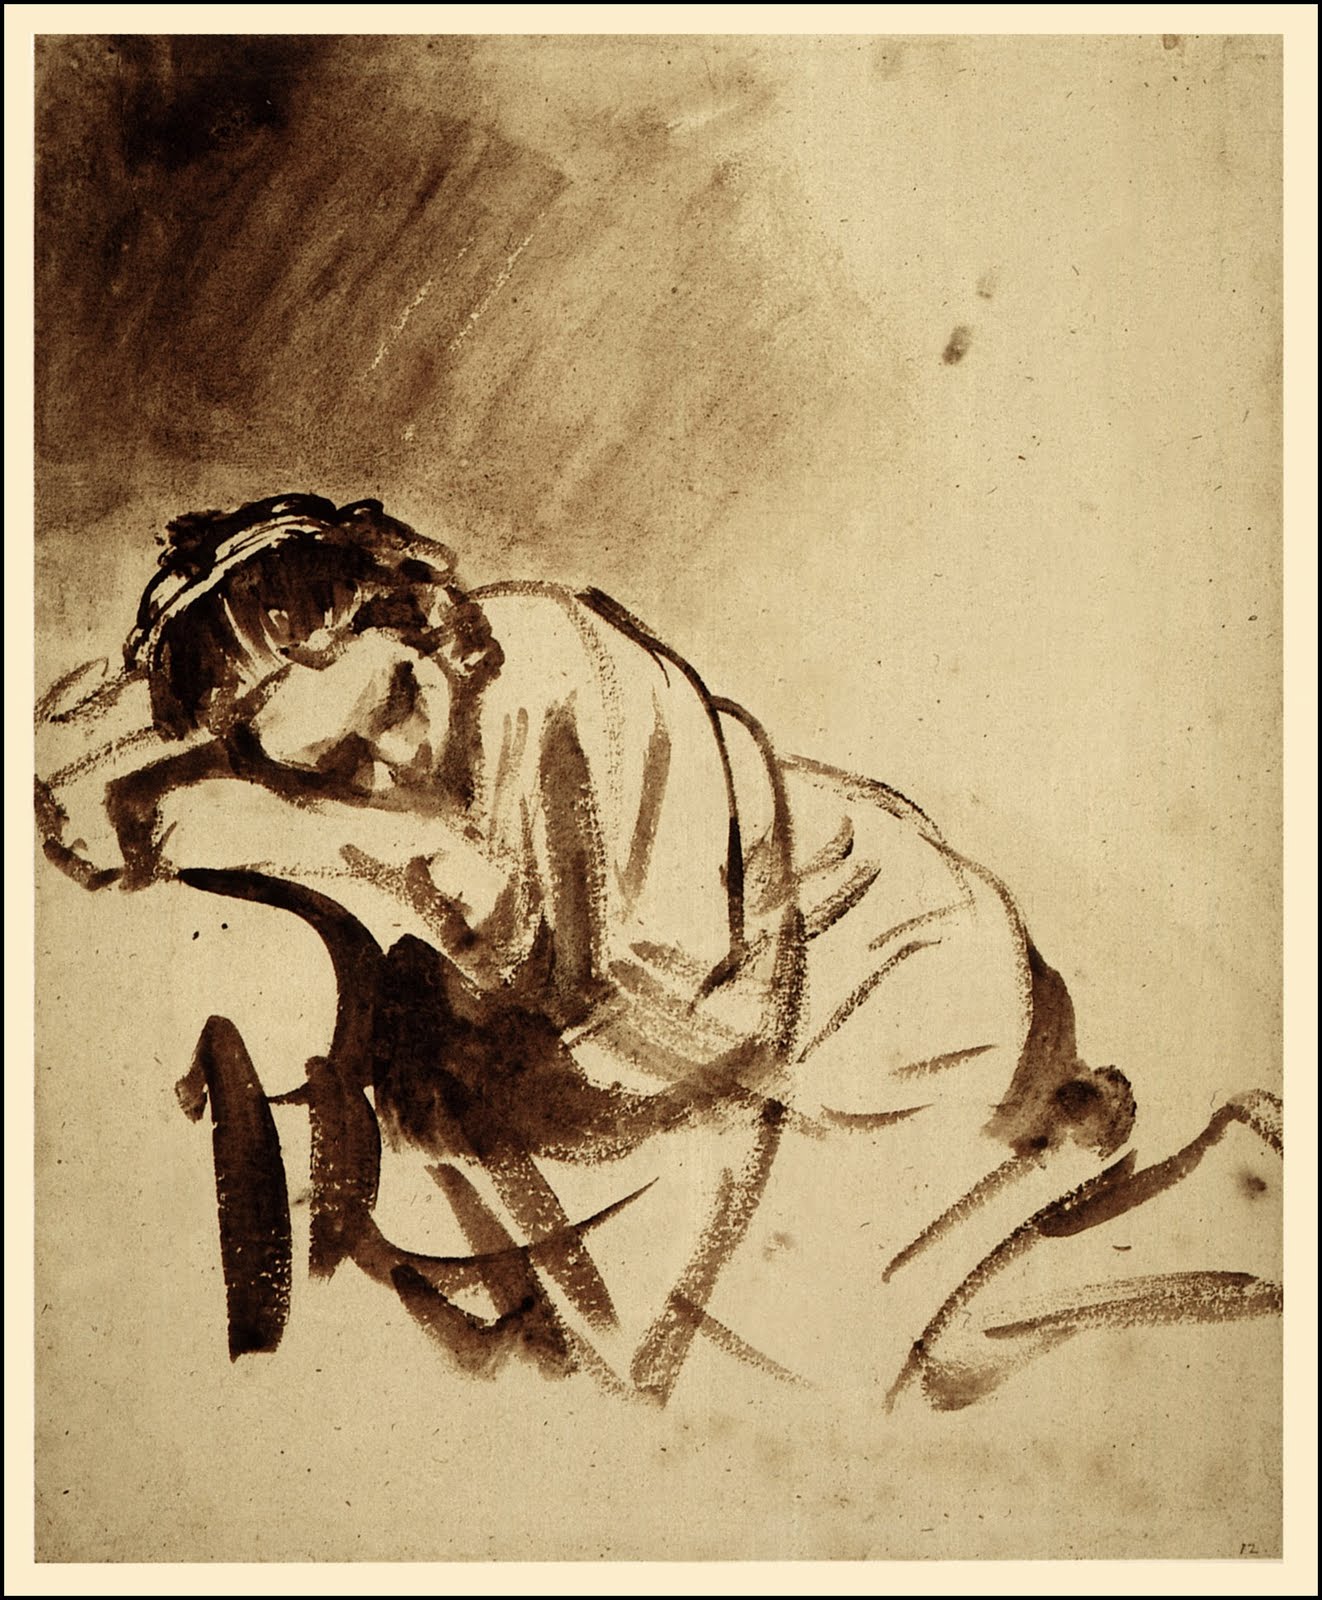 正在睡覺的年輕女人 by Rembrandt van Rijn - 1654/1654 - 246 x 203 mm 